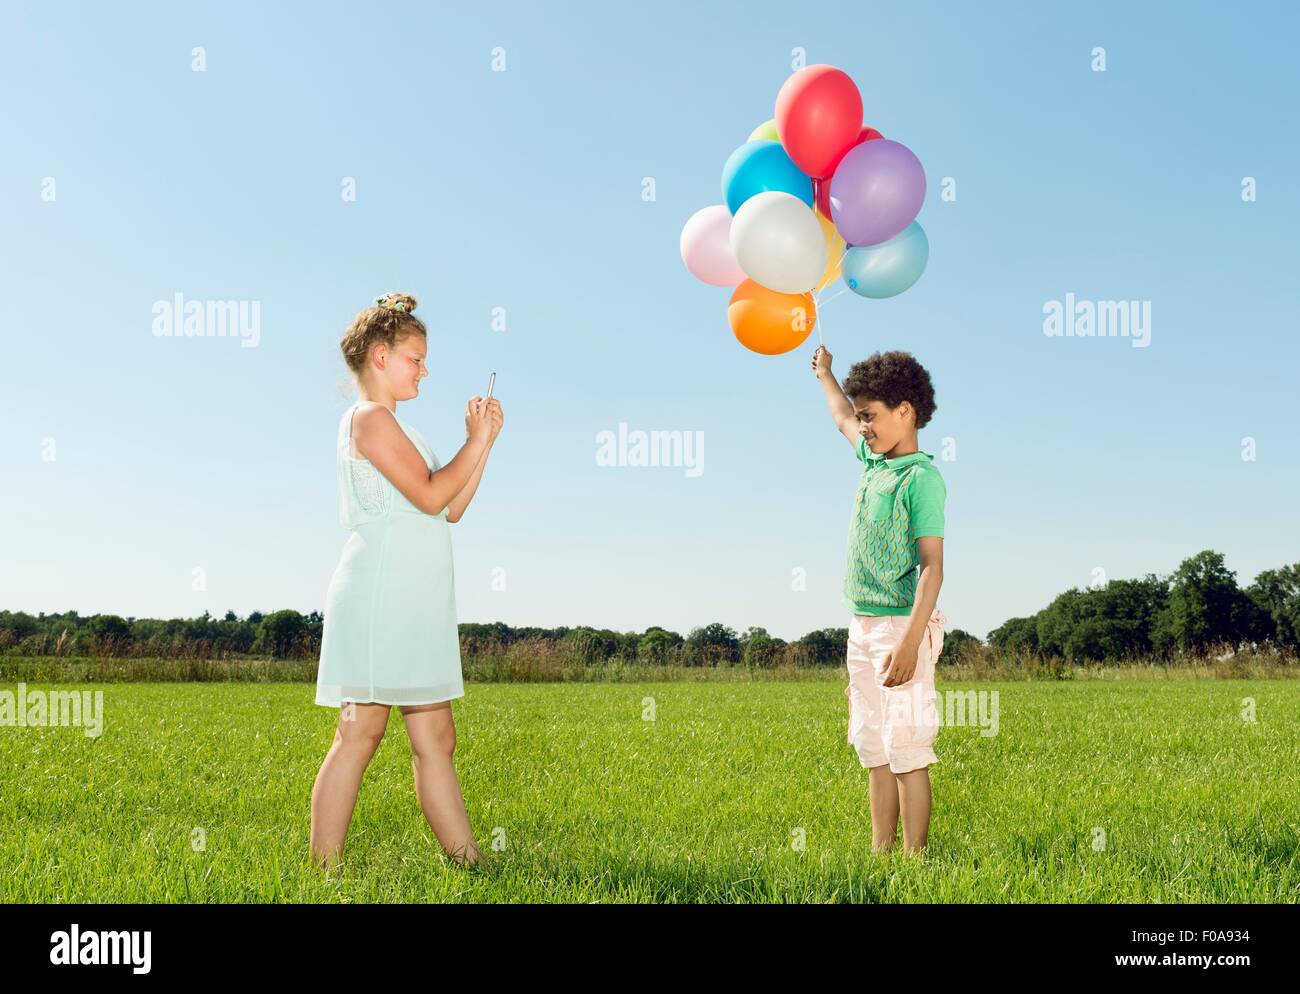 Ragazza tenendo lo smartphone fotografia di boy holding mazzetto di palloncini in campo Foto Stock